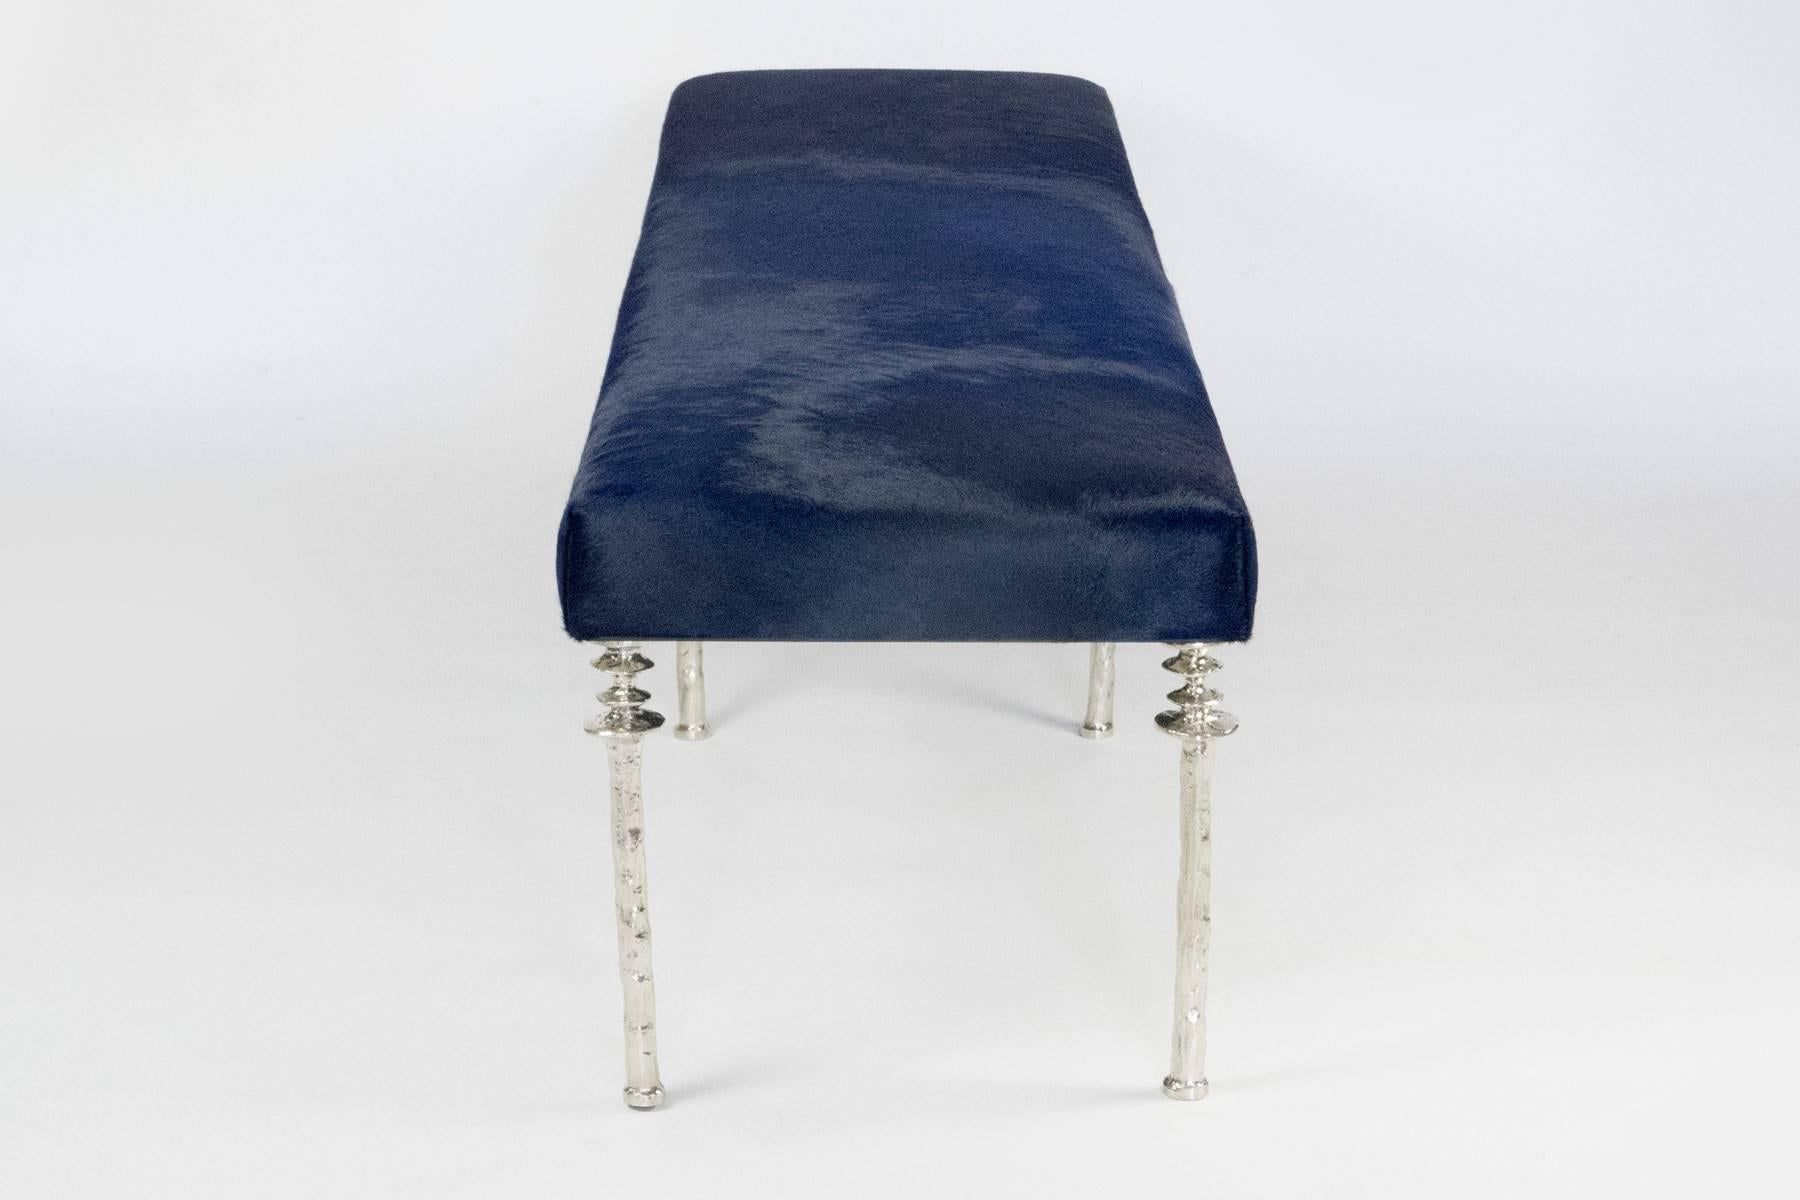 Organic Modern Sorgue Bench-White Bronze Legs by Bourgeois Boheme Atelier